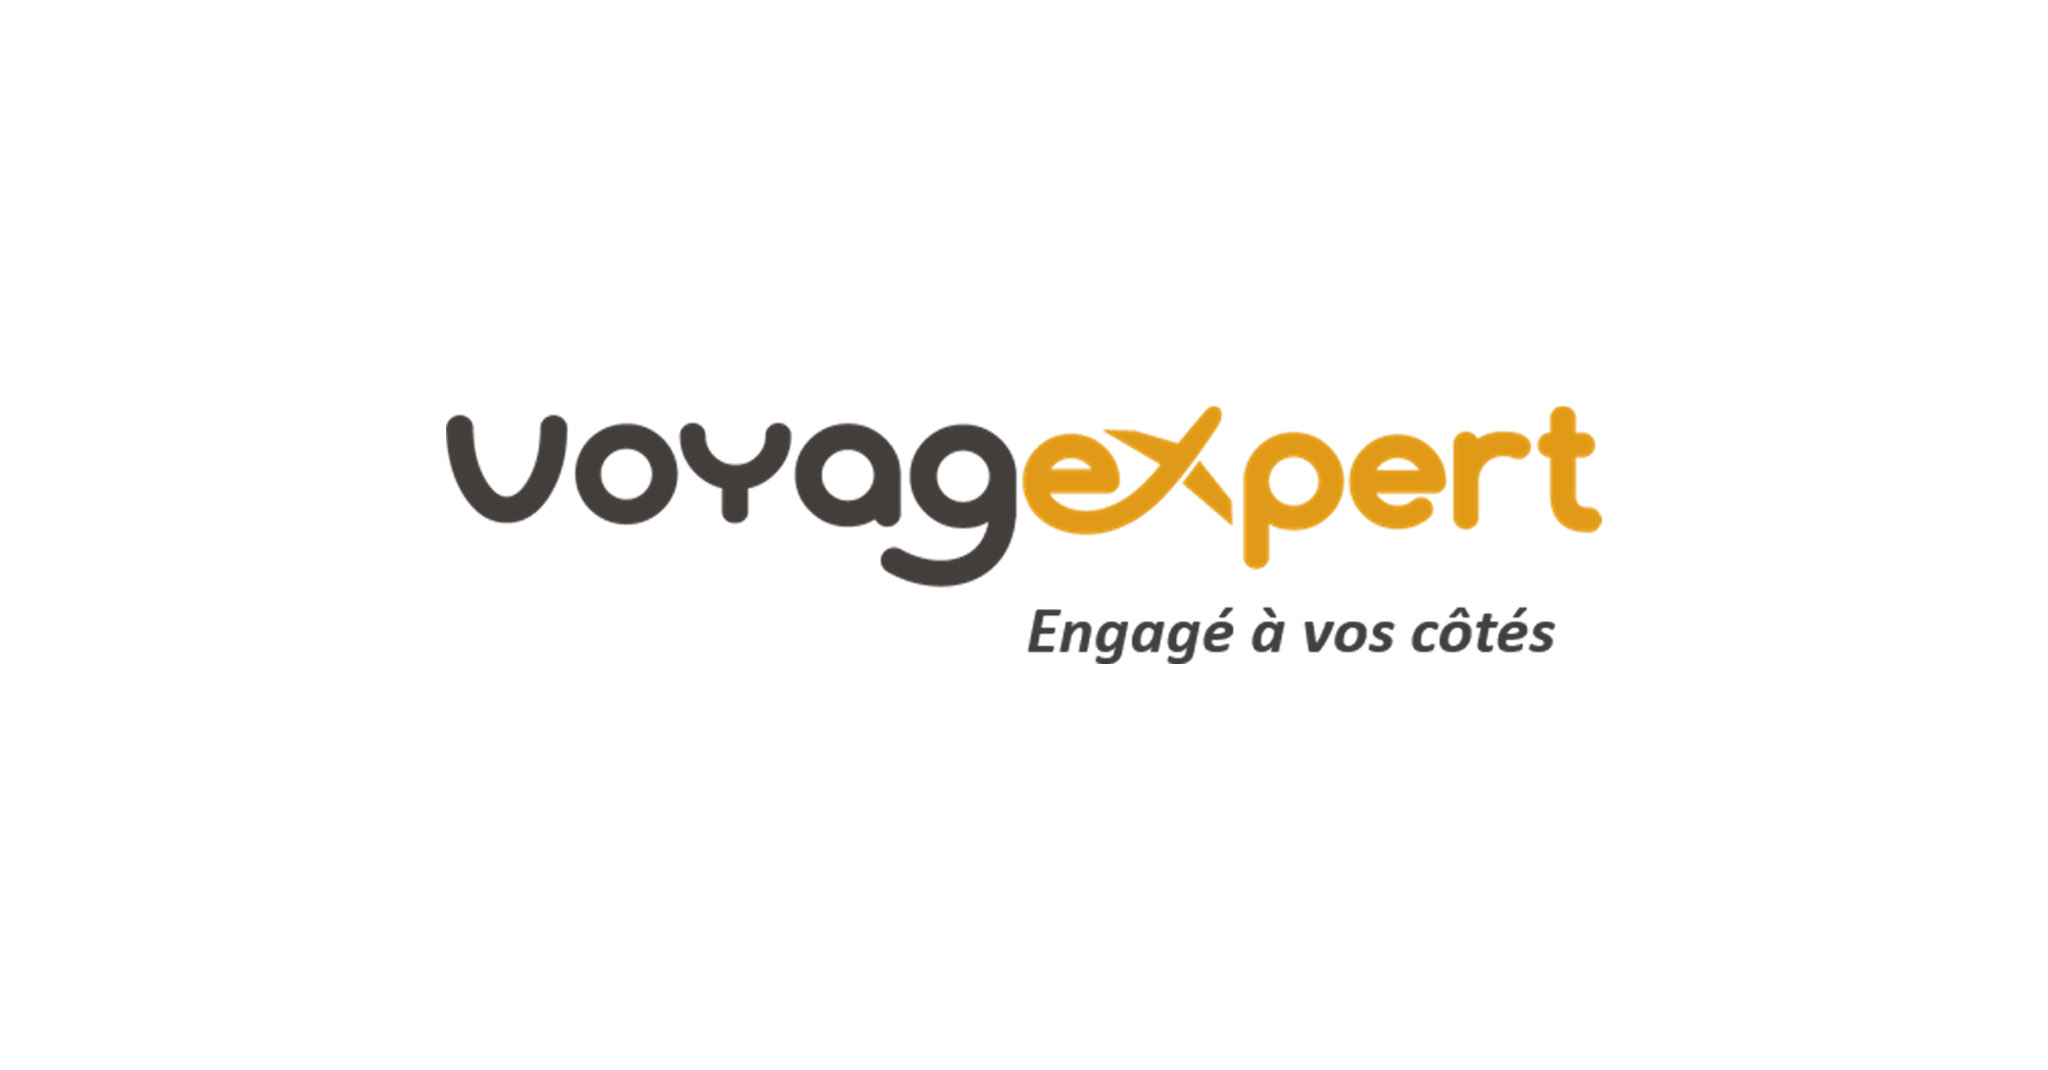 VoyagExpert renforce son positionnement à l’international !